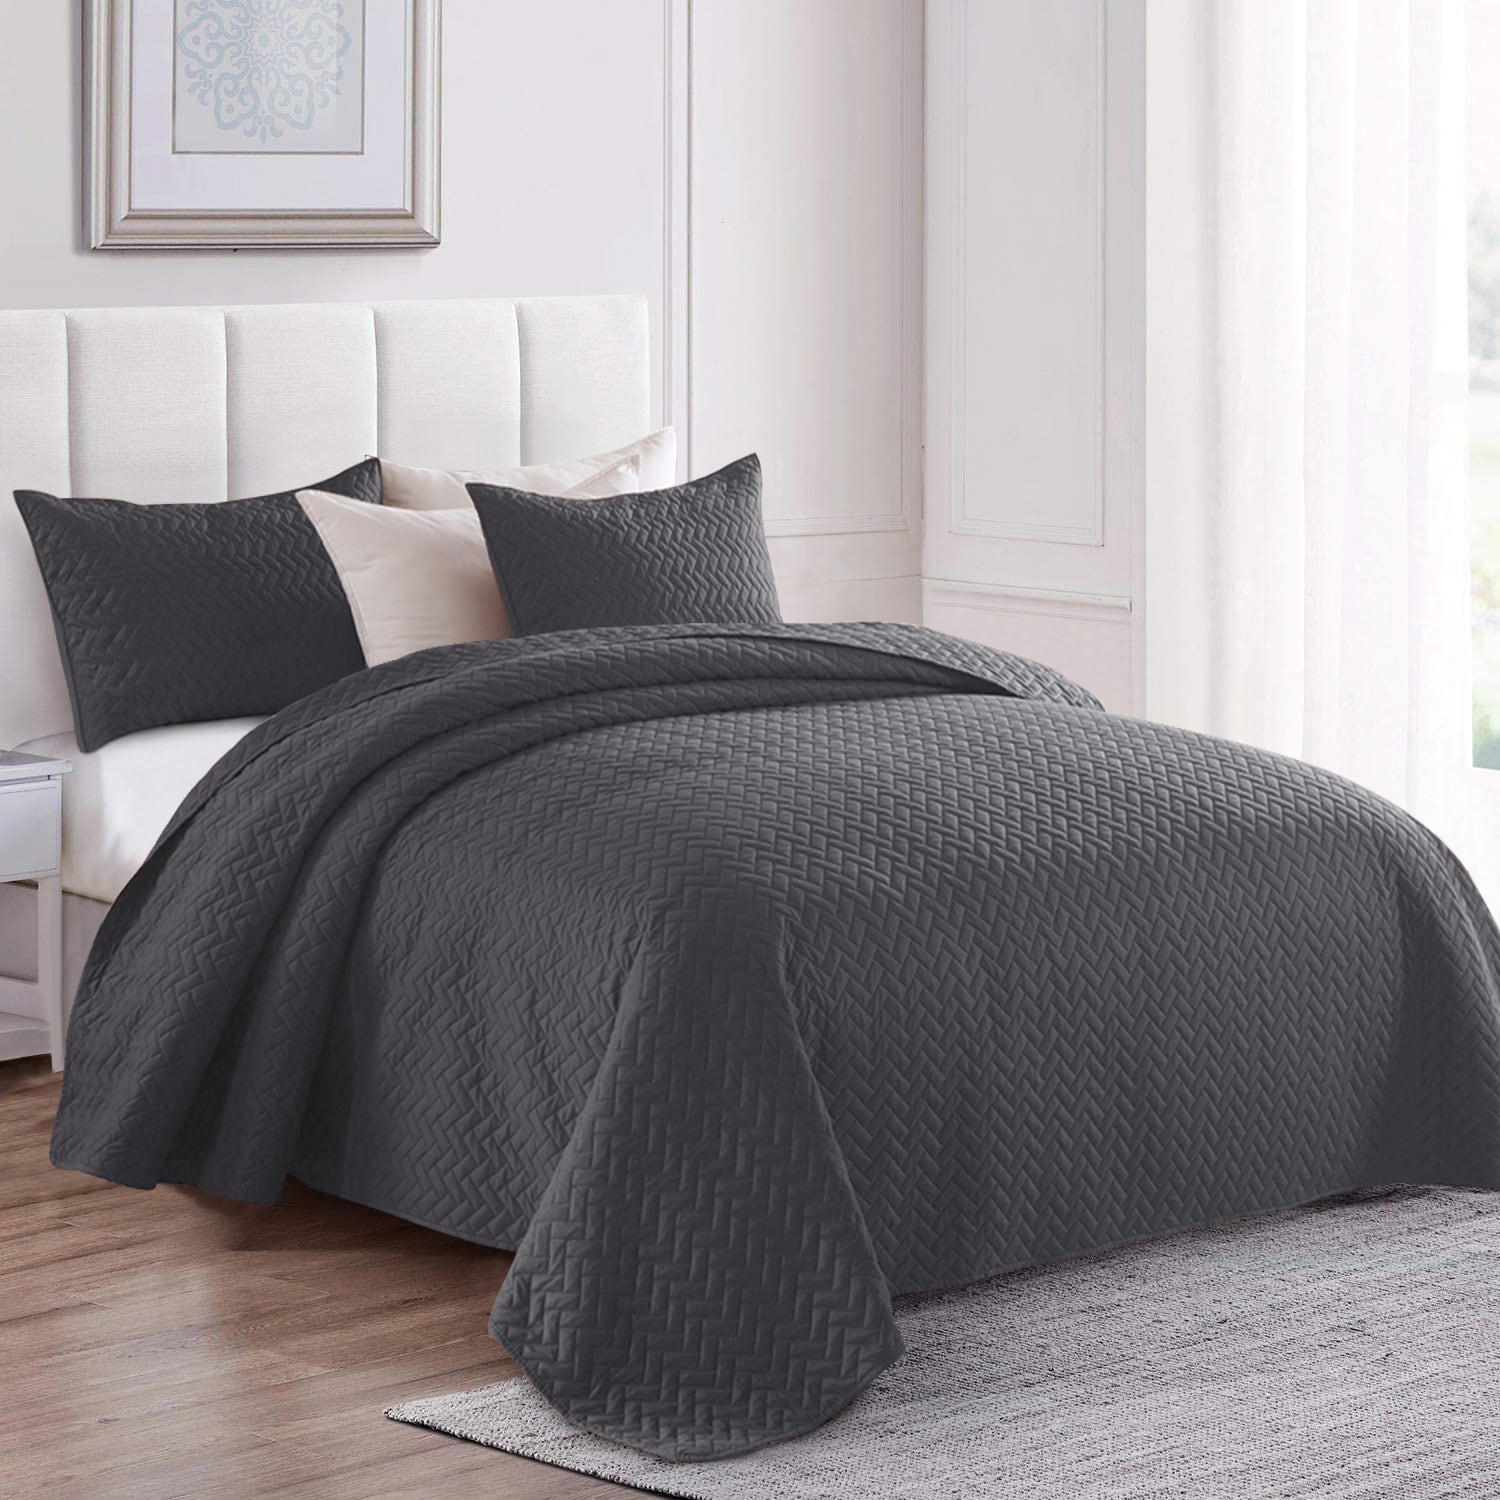 Details about   Drimbringer Microfiber Soft Quilt Coverlet set &2 Shams Bedspread Bed Cover Set 